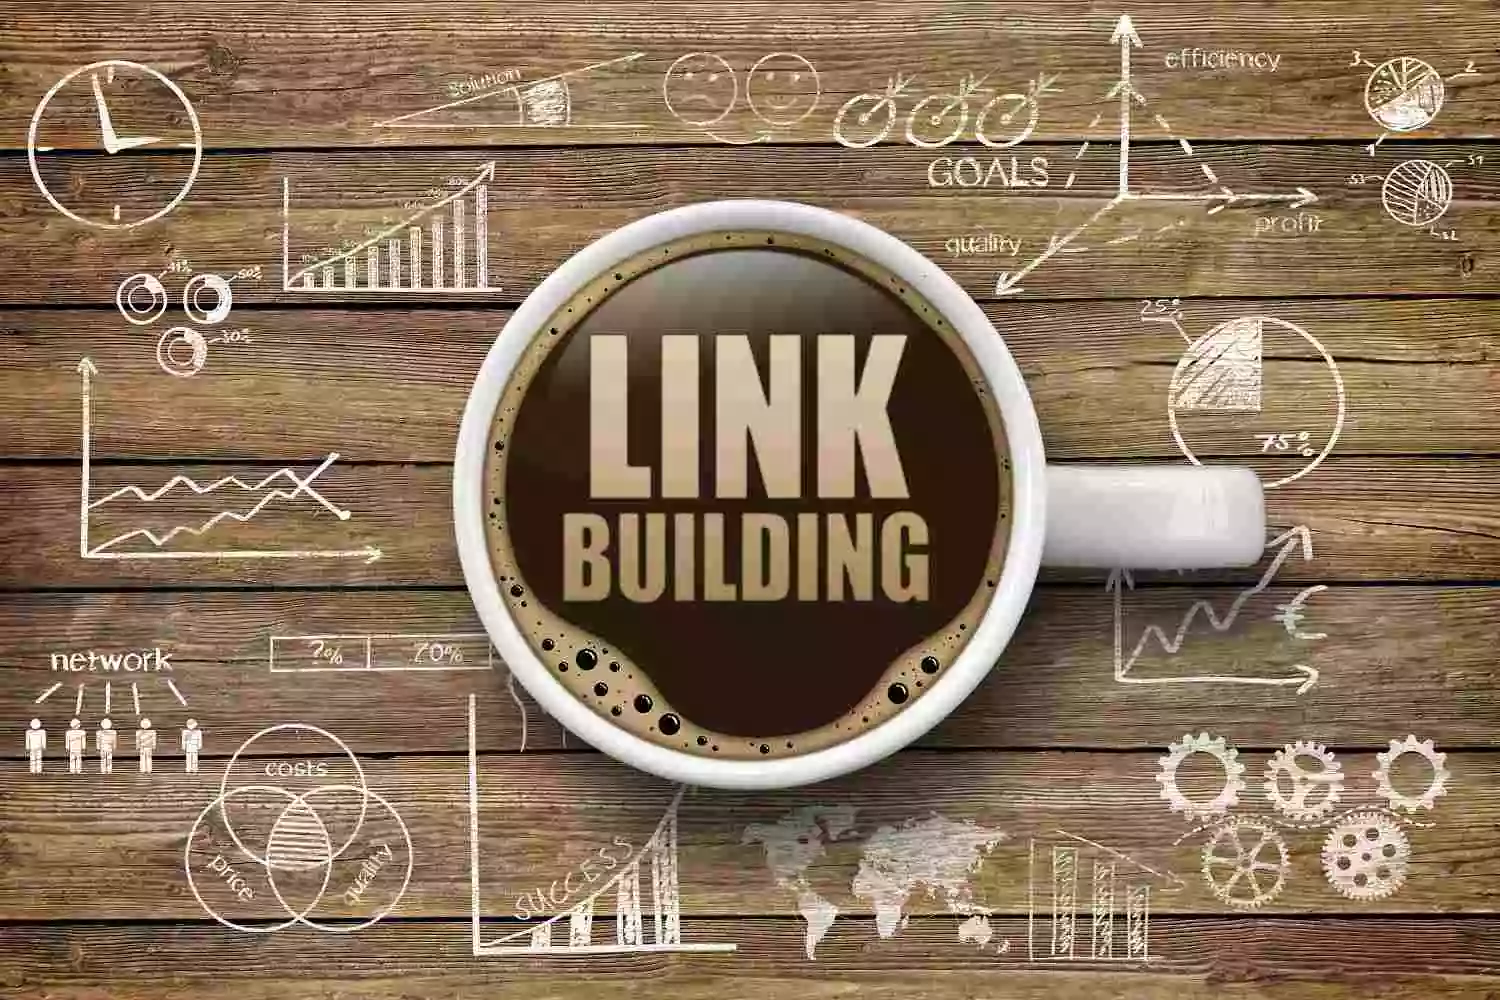 Kaffeetasse mit Linkbuilding-Schrift und verschiedenen Grafiken